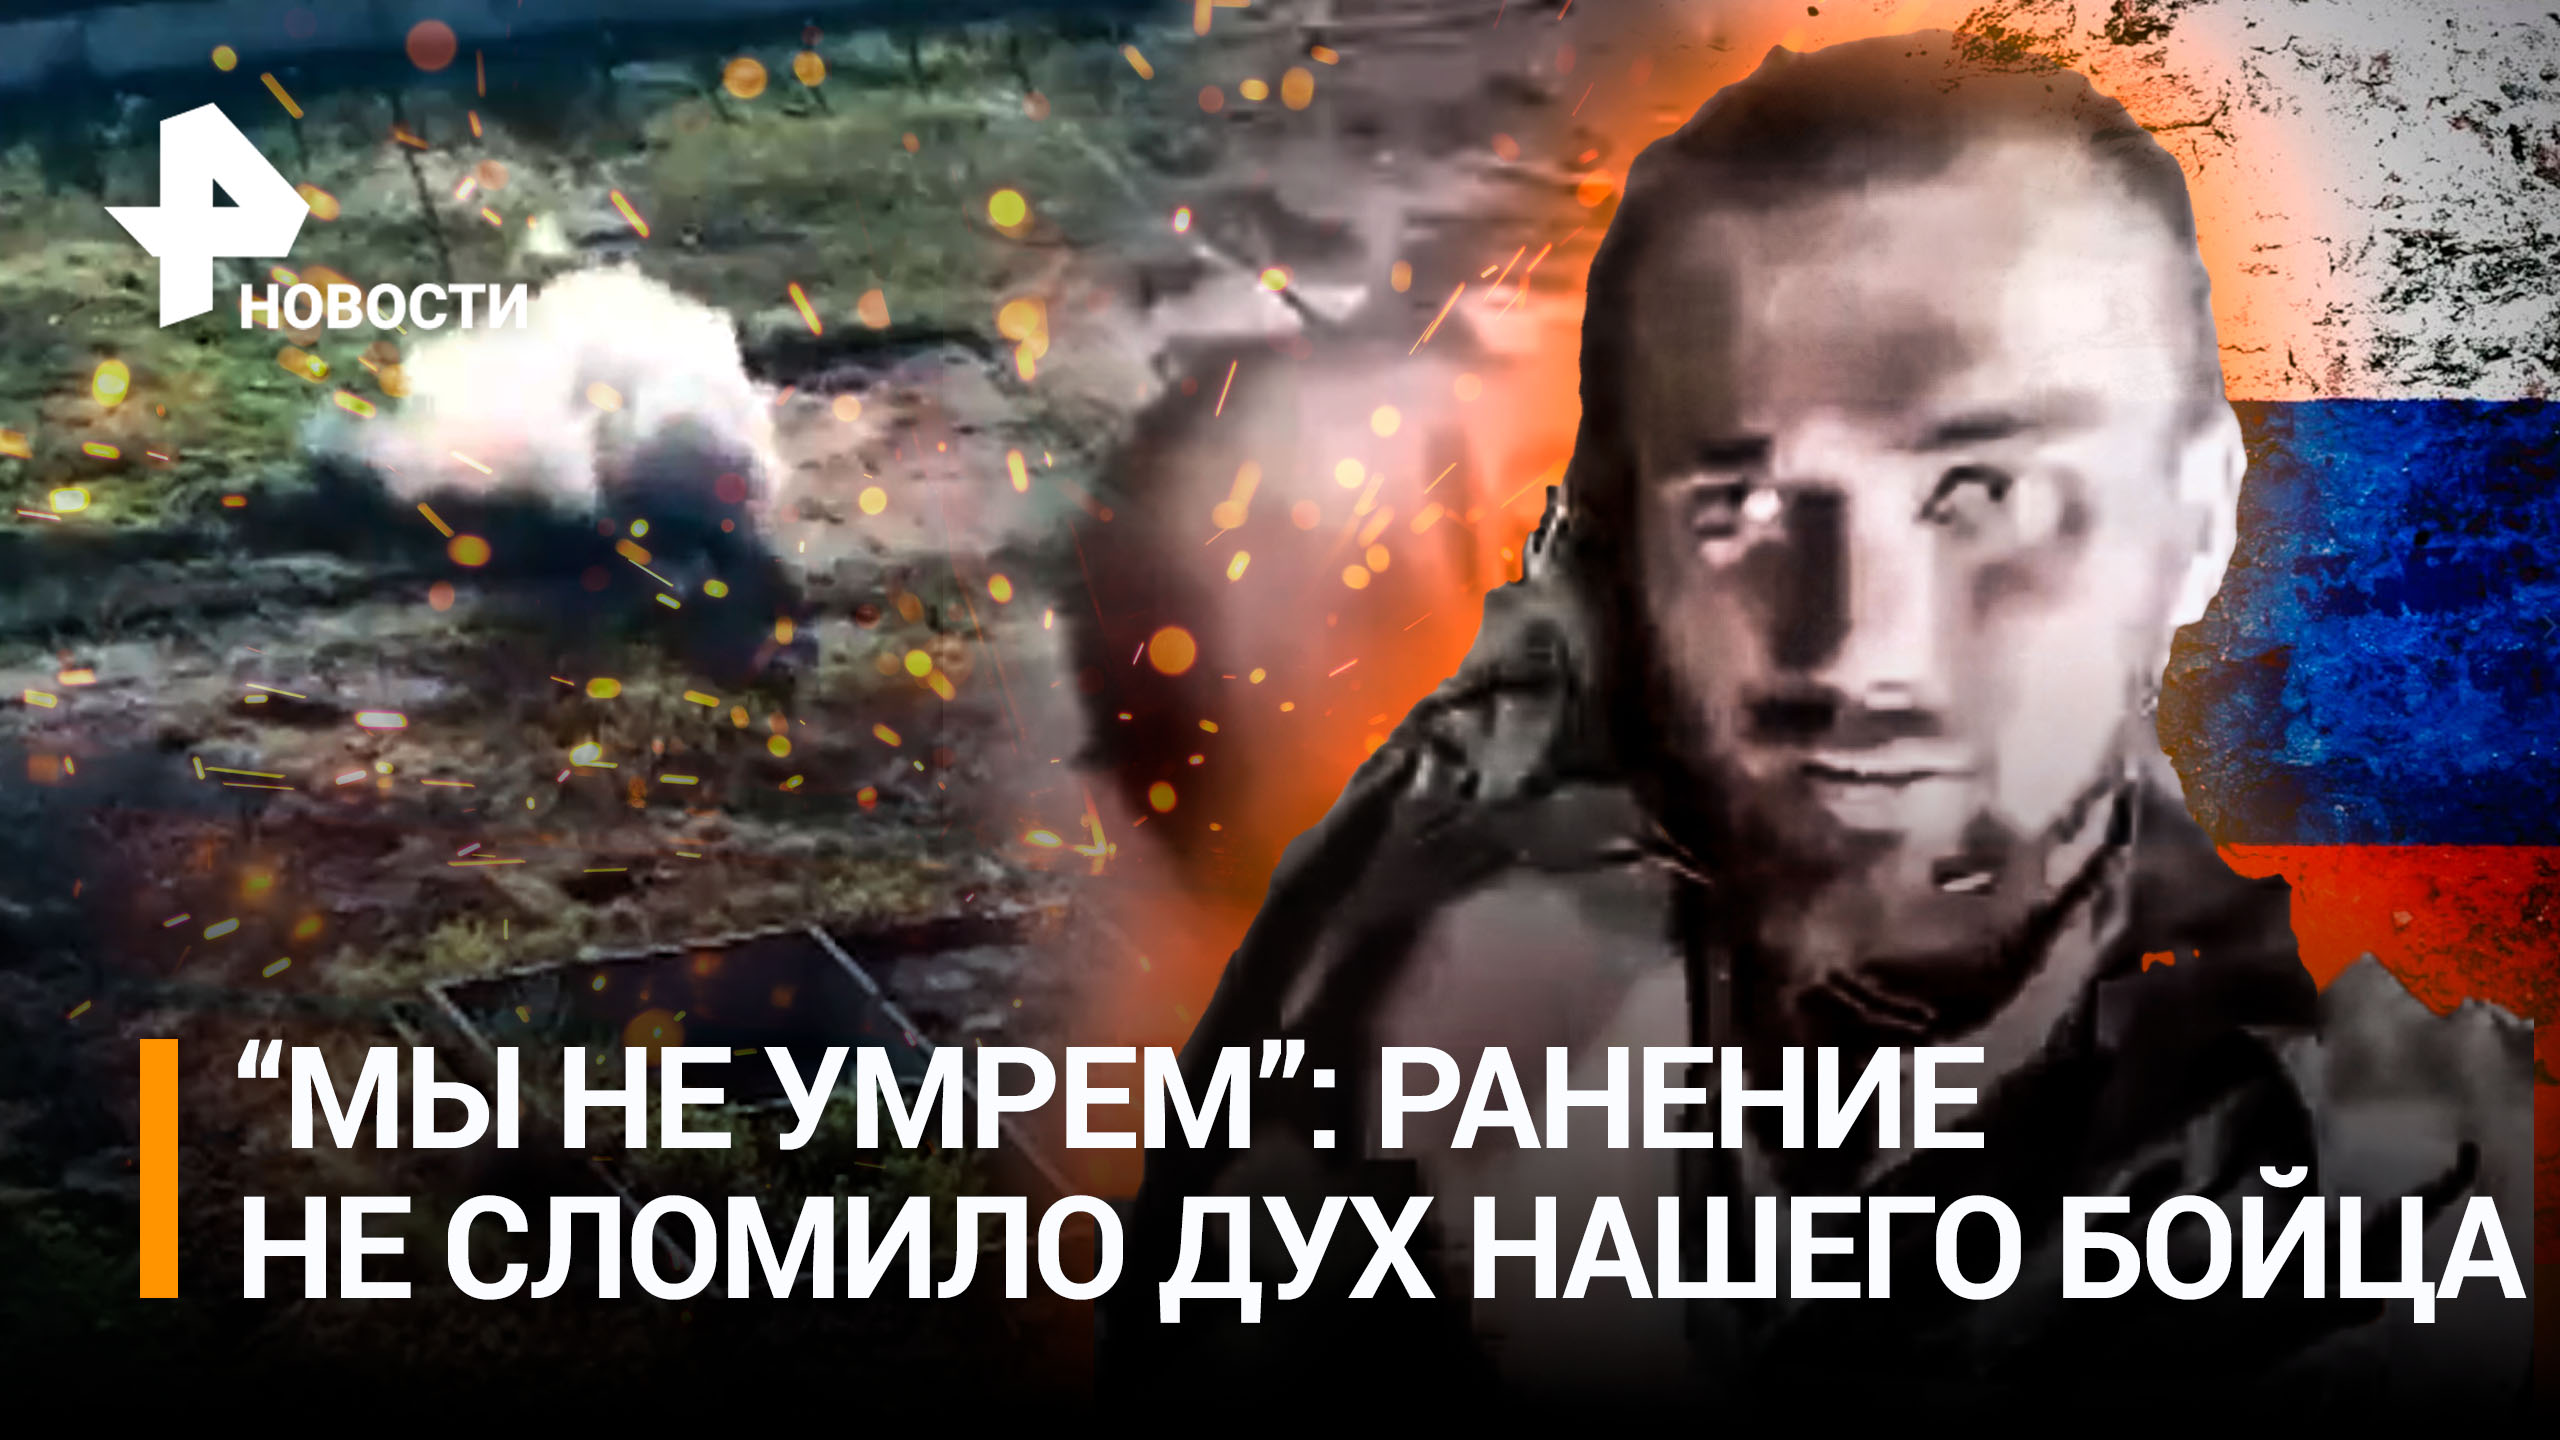 "Мы не умрем!": раненый боец Алексей читает свои стихи после разрыва гранаты / РЕН Новости